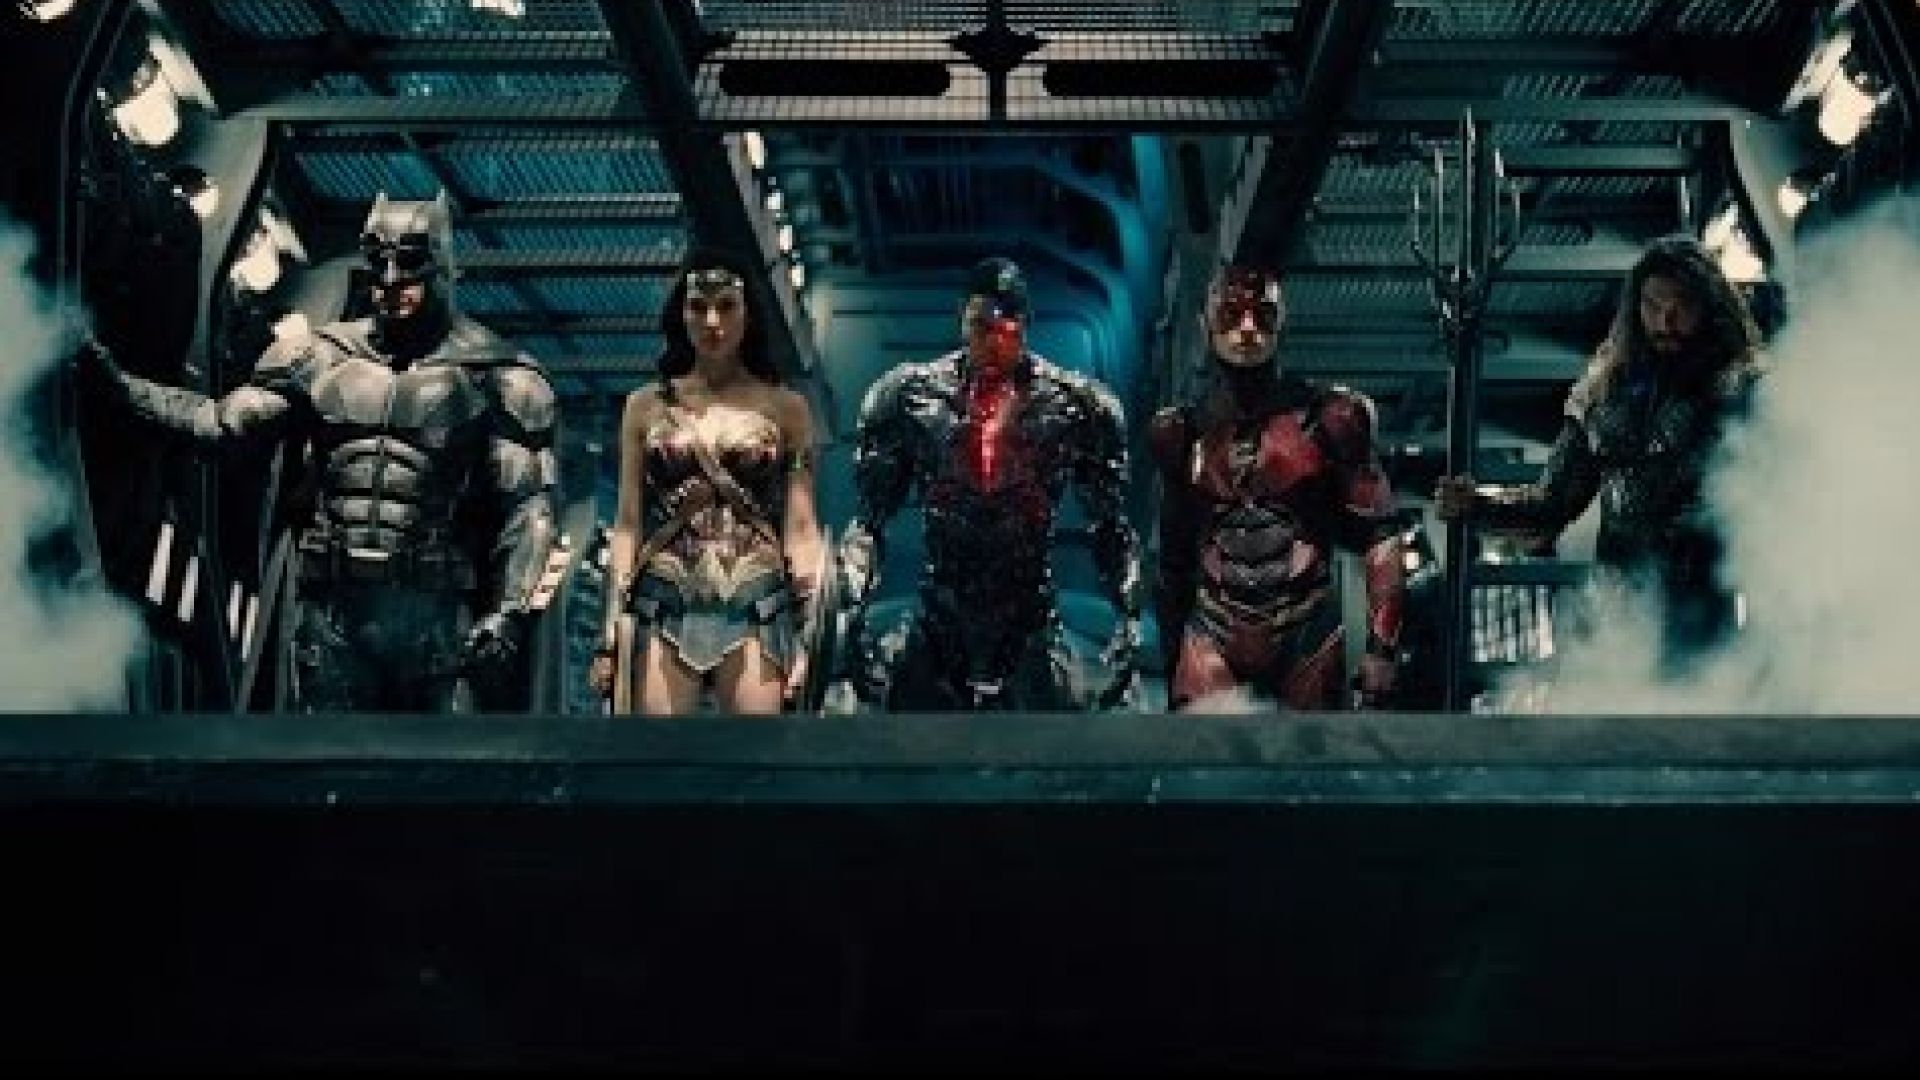 Justice League Trailer